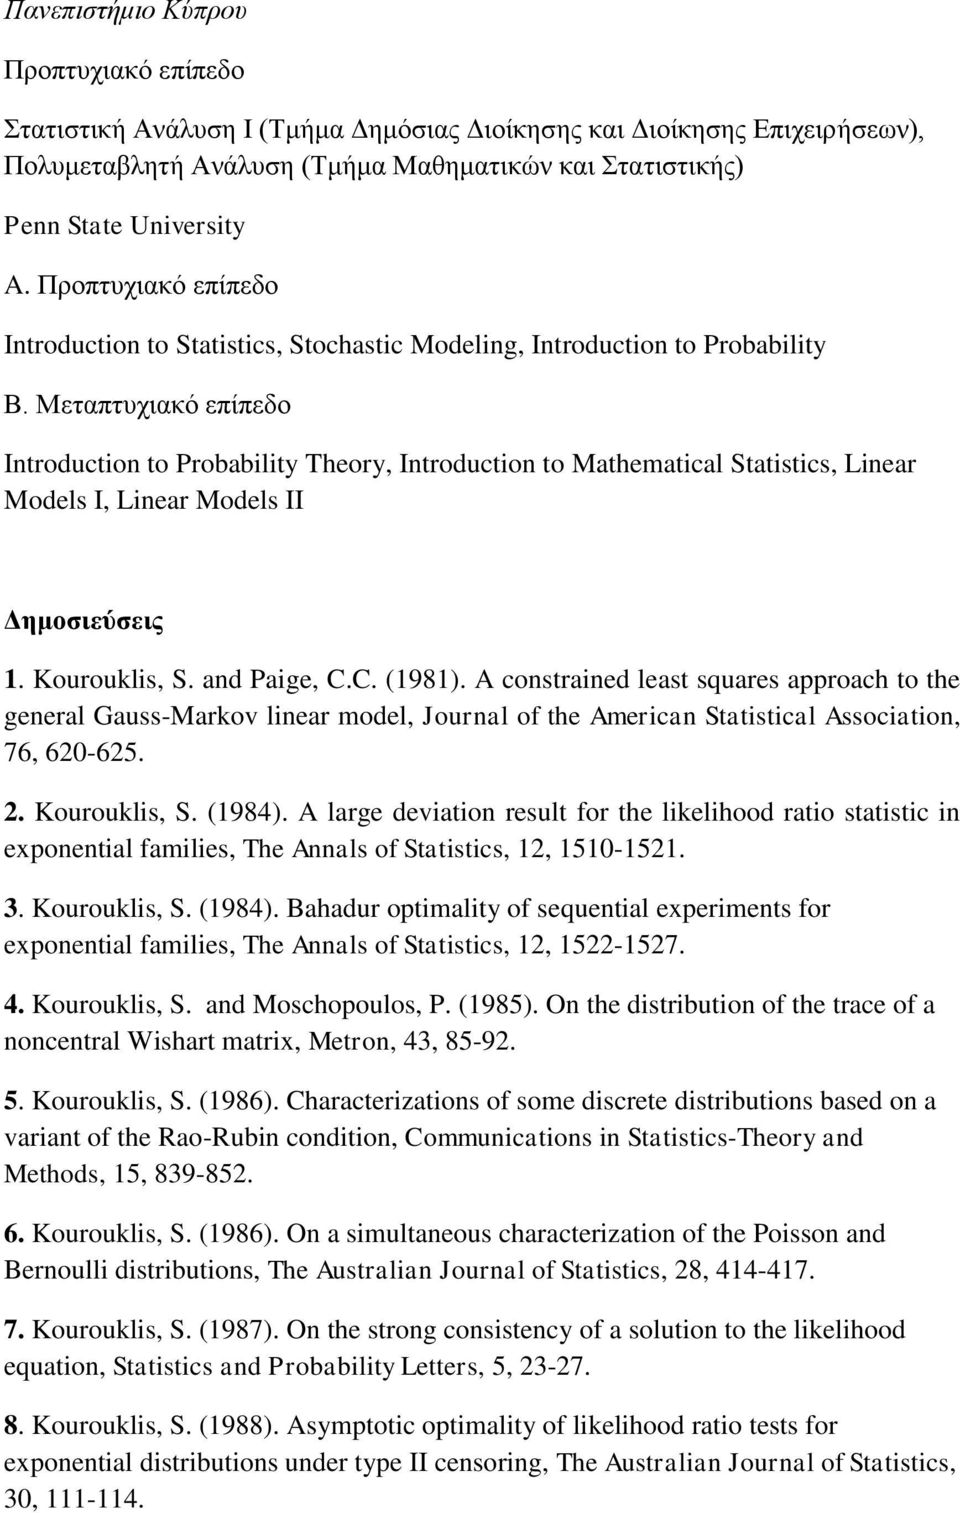 Μεταπτυχιακό επίπεδο Introduction to Probability Theory, Introduction to Mathematical Statistics, Linear Models I, Linear Models II Δημοσιεύσεις 1. Kourouklis, S. and Paige, C.C. (1981).